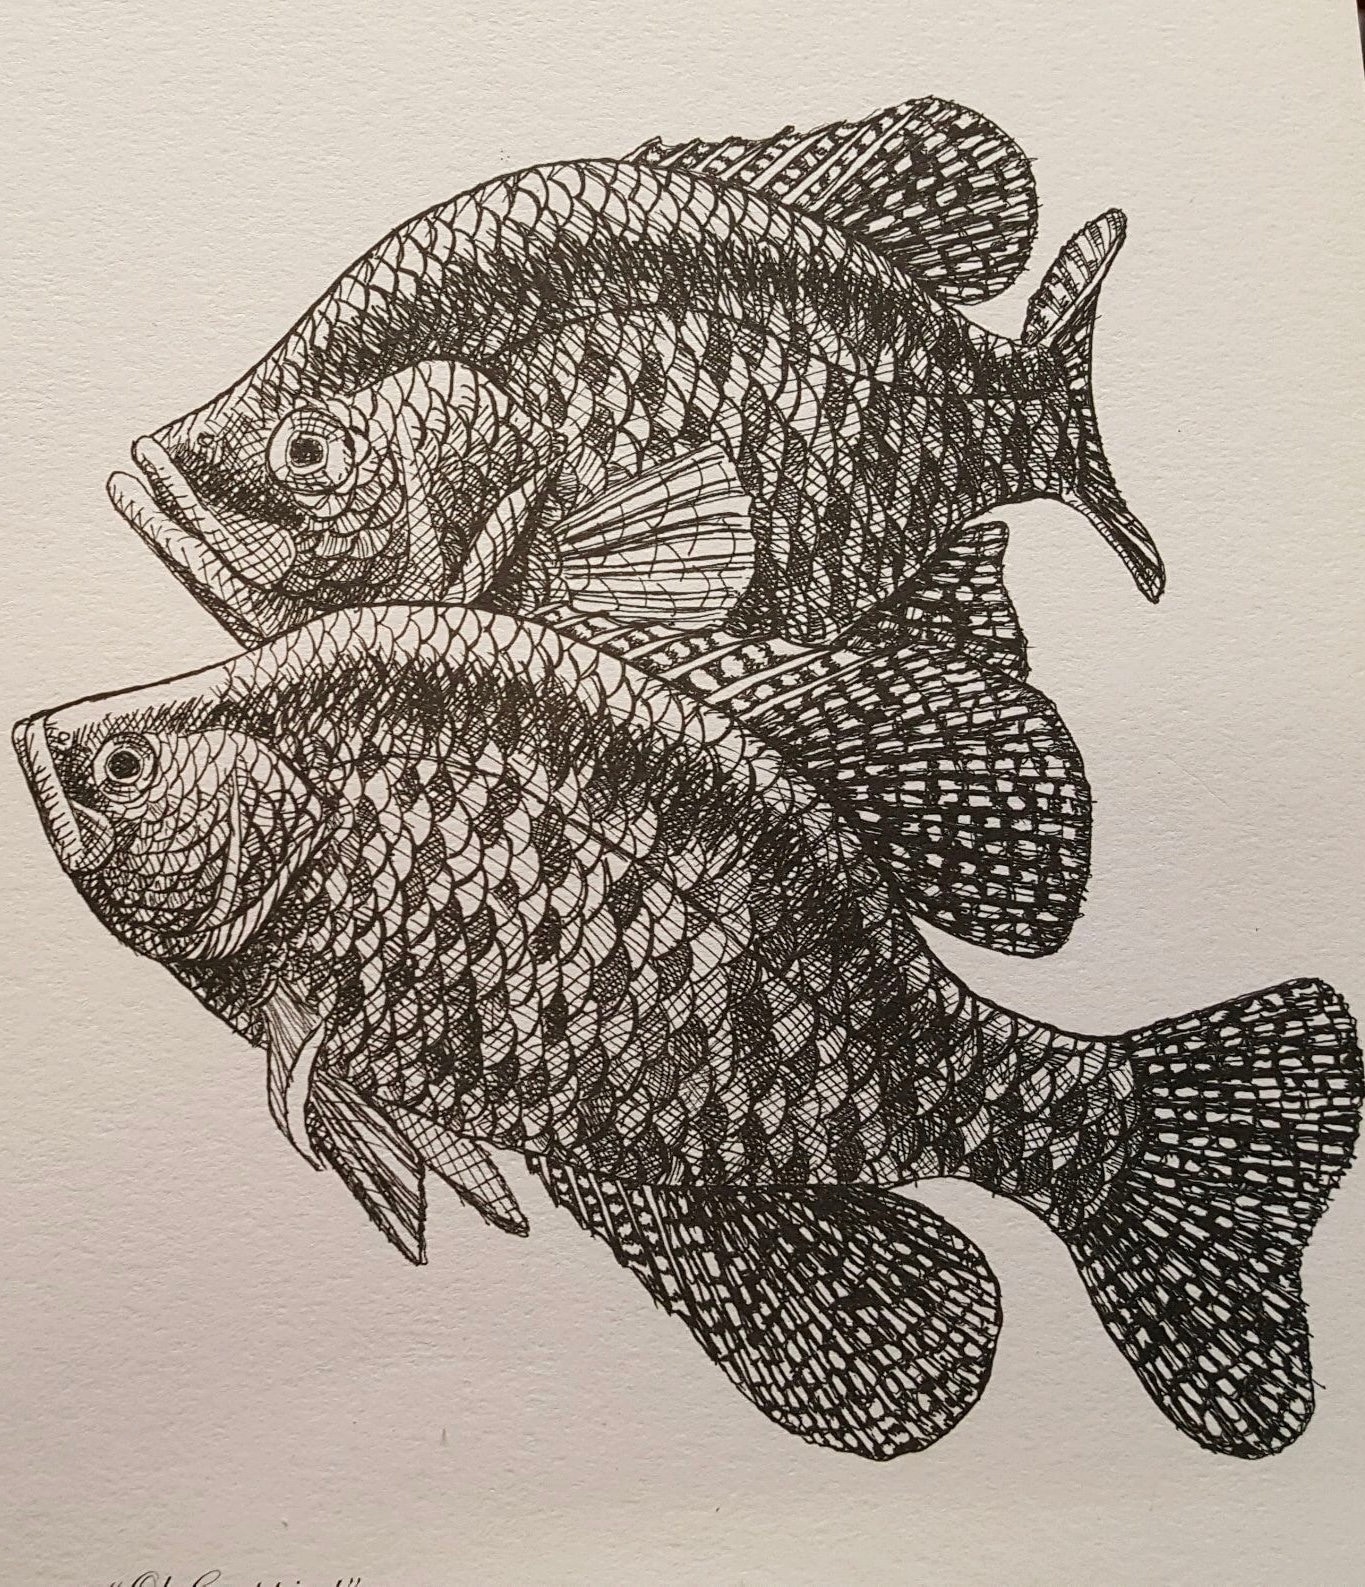 Crappie Wildlife Fish Georgia Made Art Perch Bluegill Bream